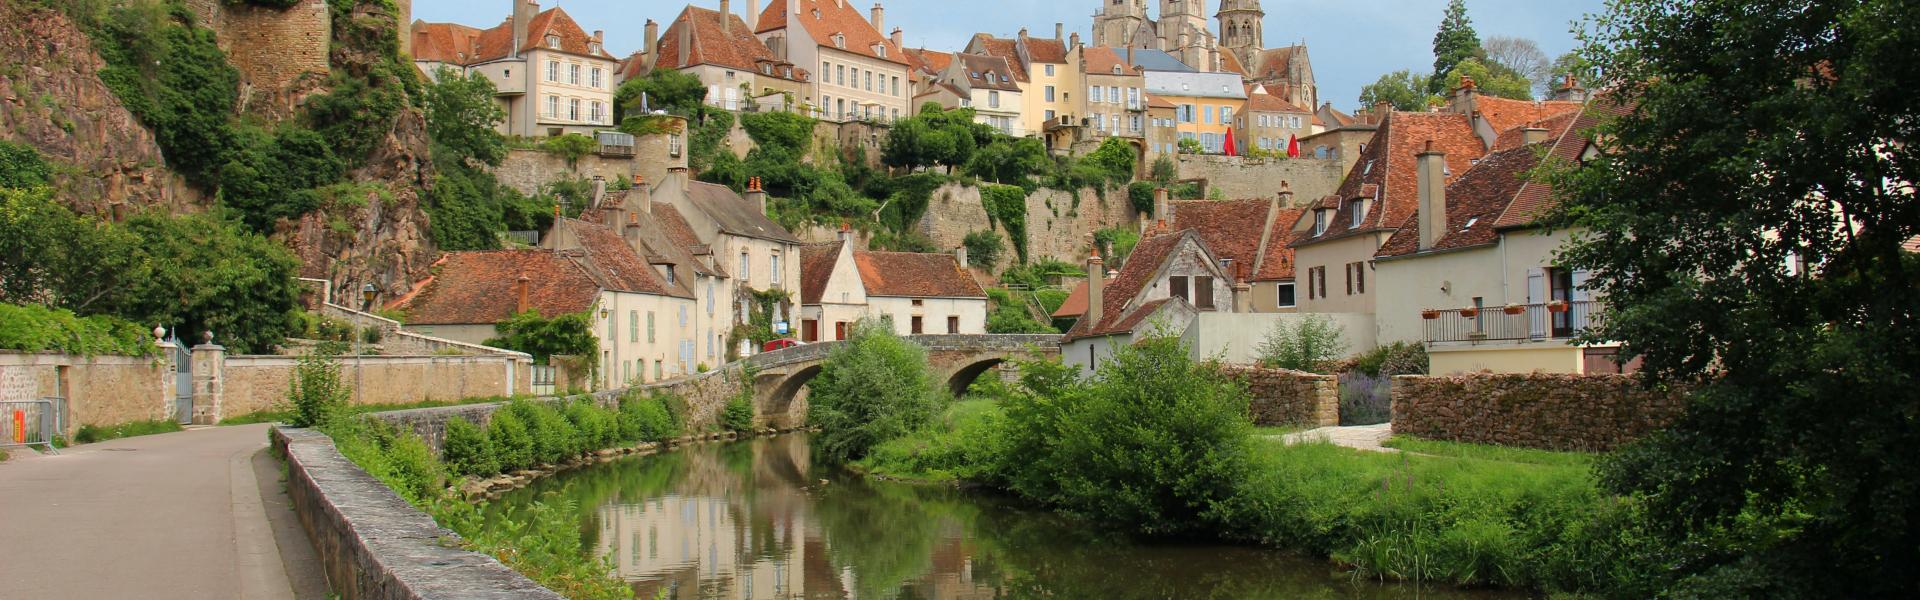 Location de vacances à Auxerre - Yonne - amivac